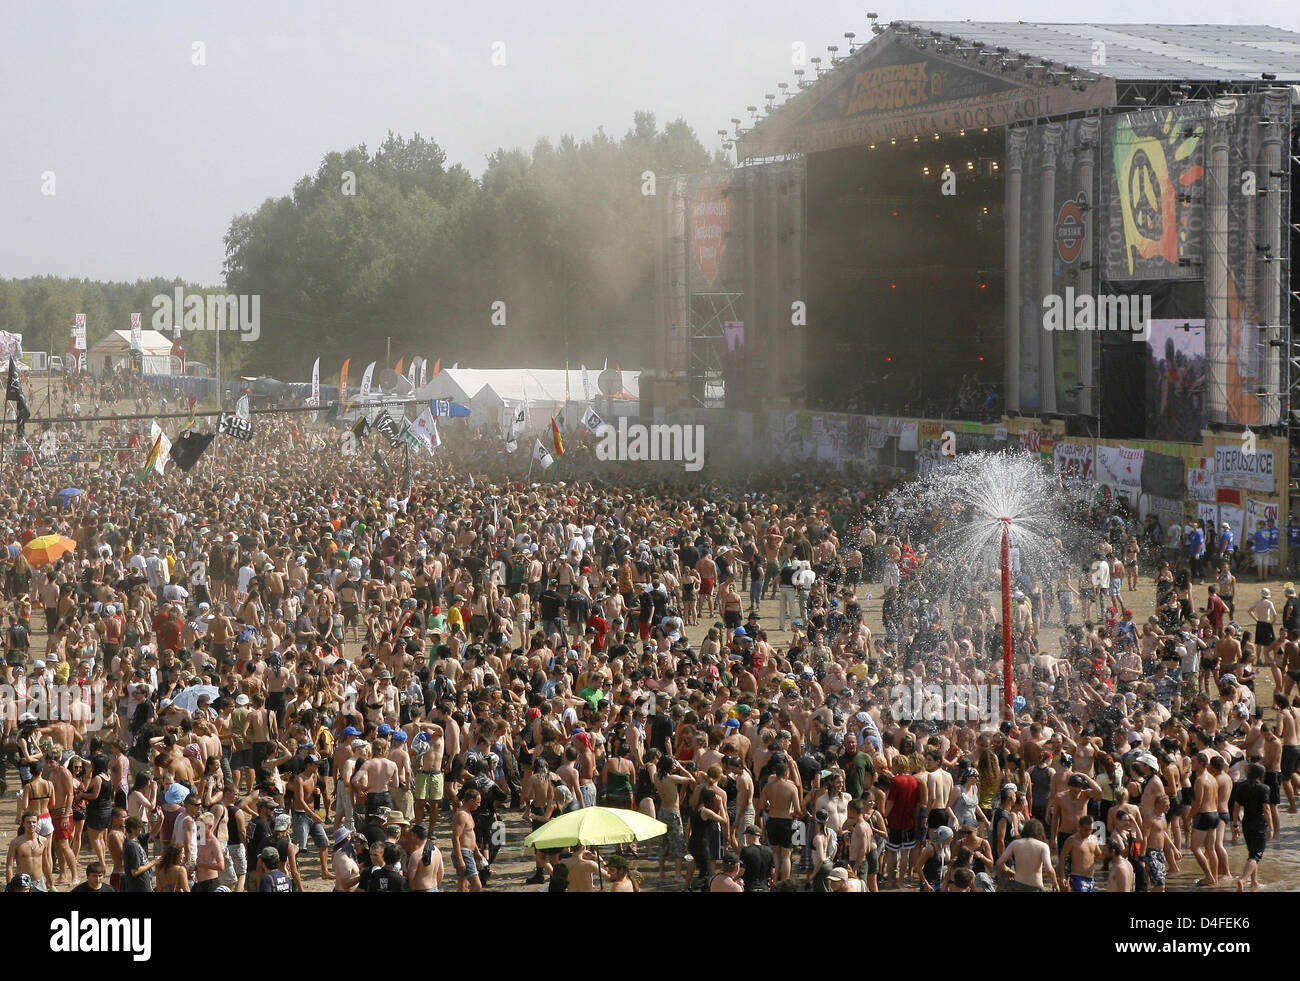 Jugendliche sind das Rock-Festival "Haltestelle Woodstock" in Kostrzyn, Polen, 1. August 2008 abgebildet. Die polnischen Stiftung WOSP (große Orchester der Weihnachtshilfe) organisiert die gratis dreitägige open-air Festival zum 14. Mal in ein ehemaliges Militärgebiet nahe der deutsch-polnischen Grenze. Mehr als 150.000 Besucher erwartet. Einige 40 Bands aus Deutschland, Schweden, Pol Stockfoto